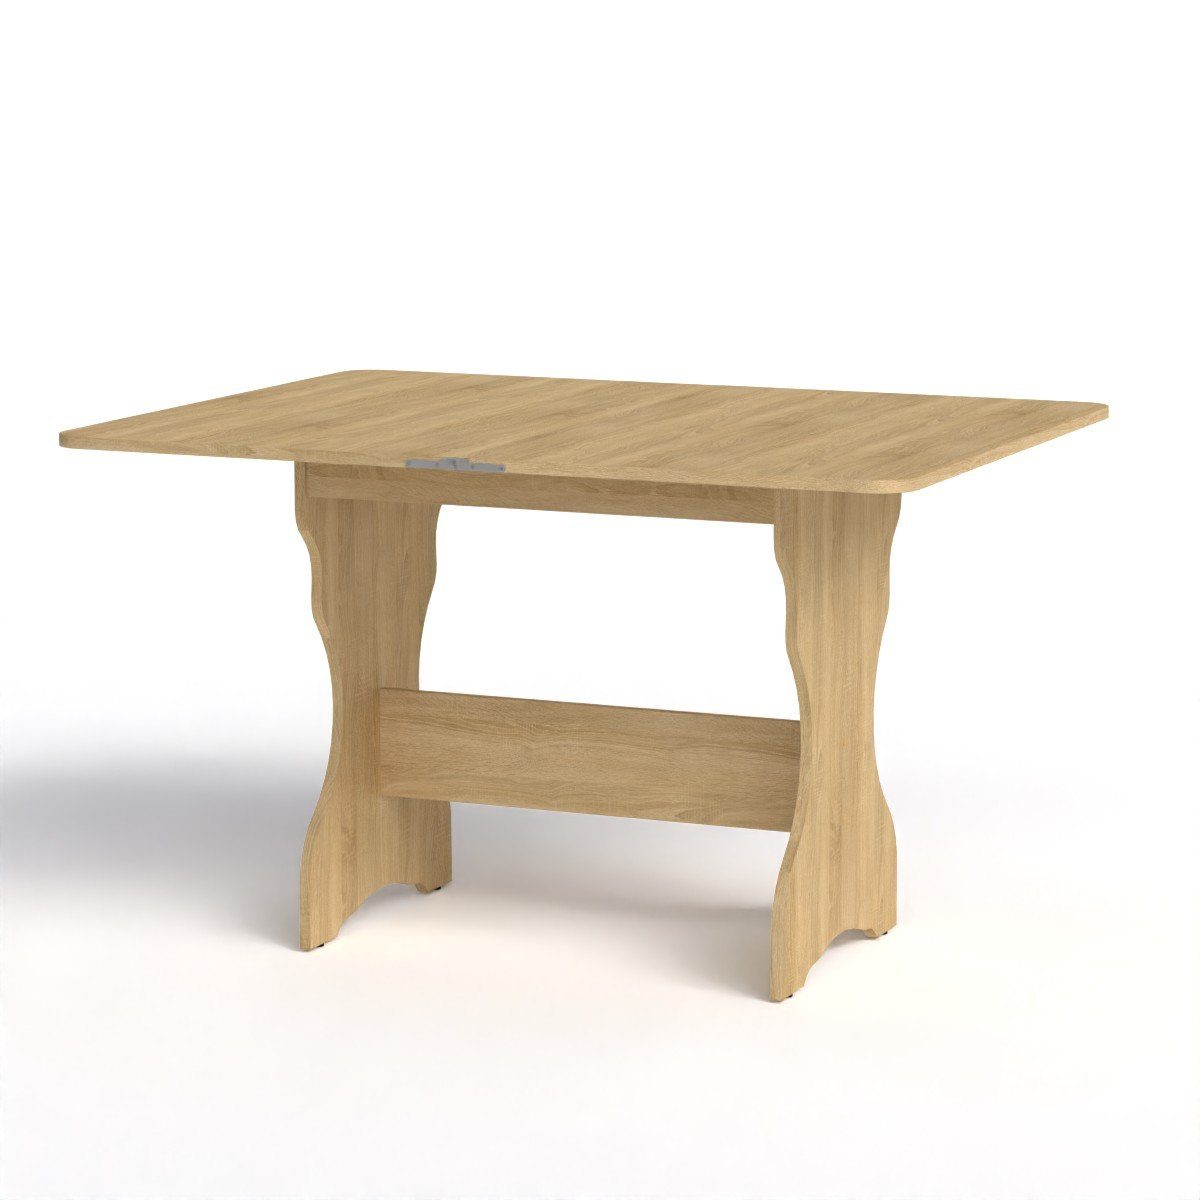 Rodnik Esstisch, ausklappbar platzsparend, drehbare Tischplatte mit abgerundeten Ecken sonoma Eiche | Esstische